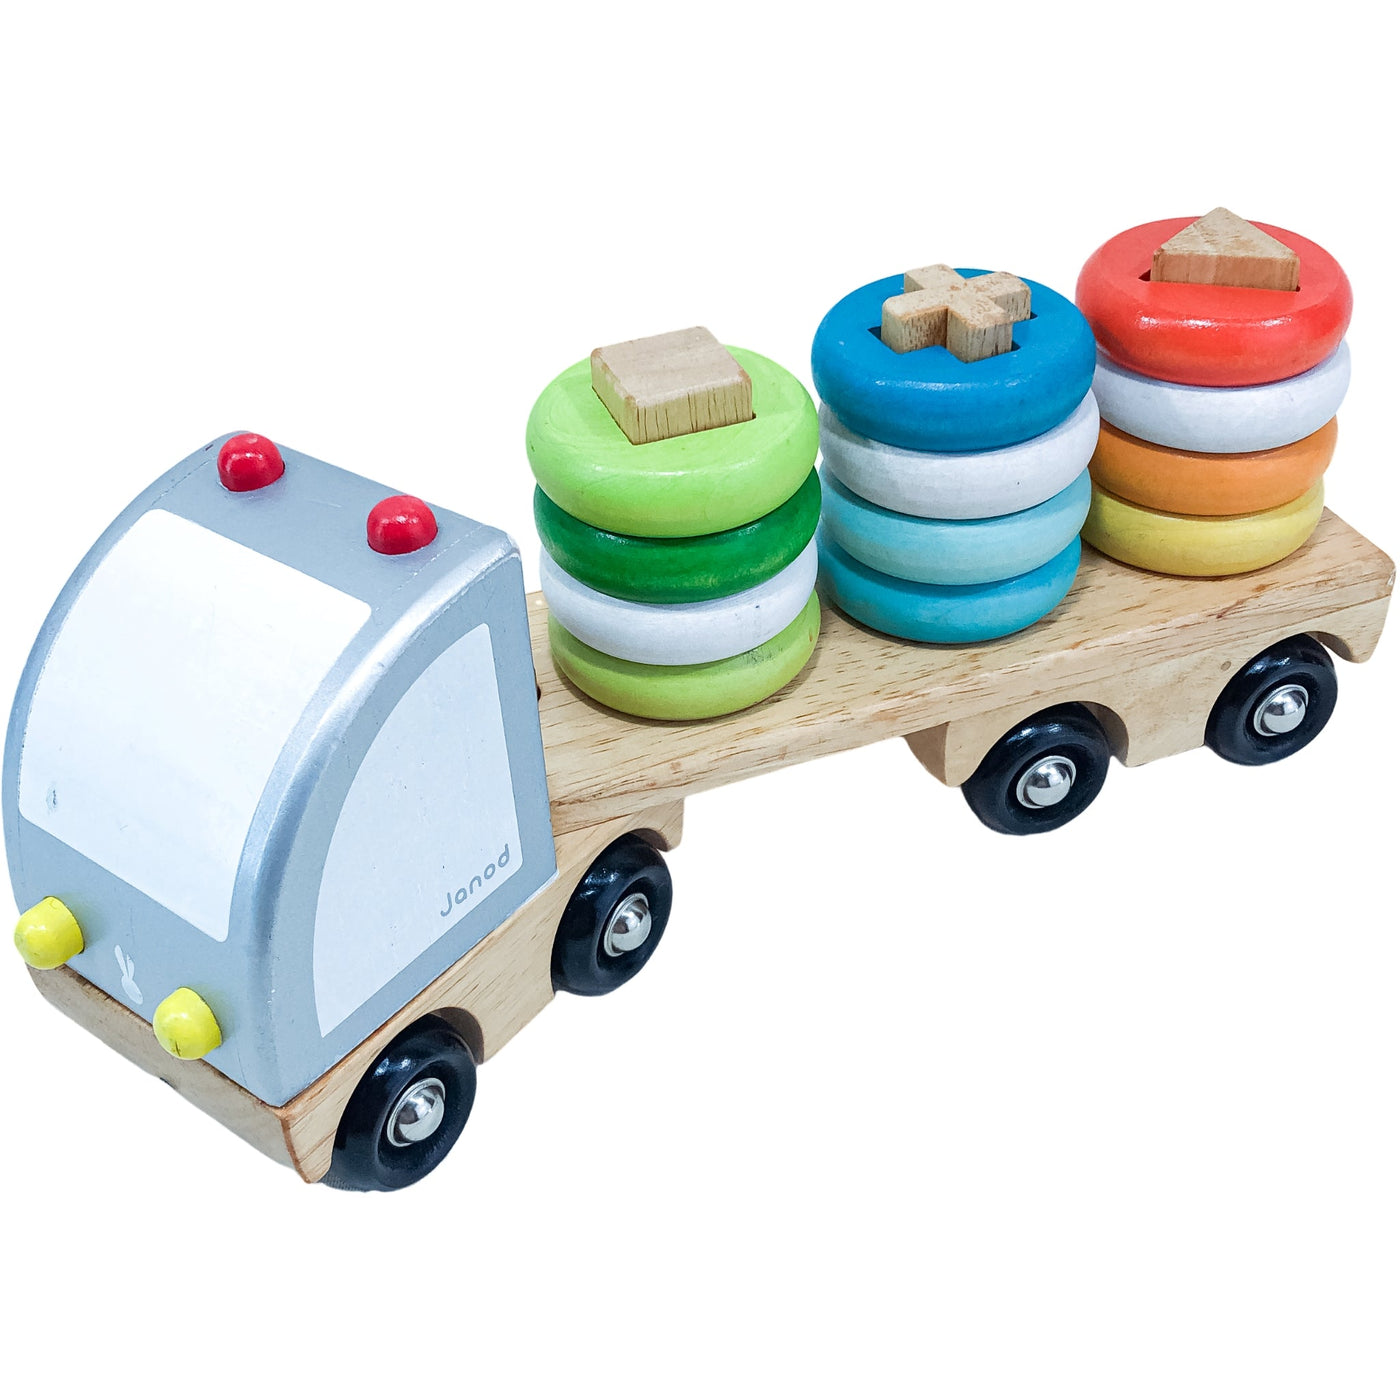 Camion "Camion Multi color" de seconde main en bois pour enfant à partir de 18 mois - Vue 2